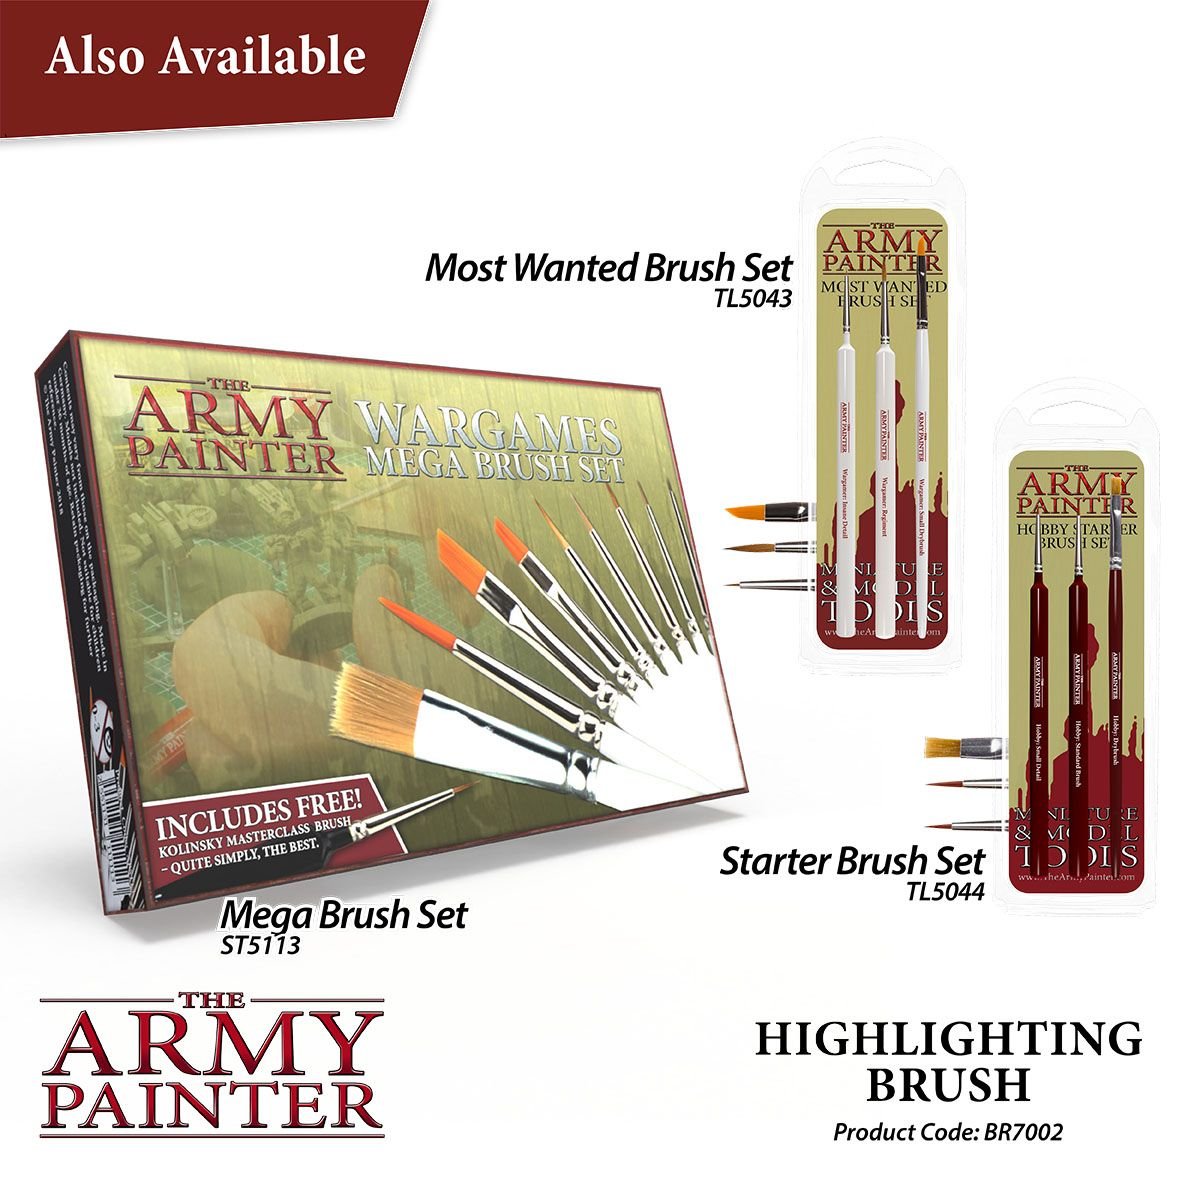 The Army Painter - Hobby Brush: Highlighting Brush